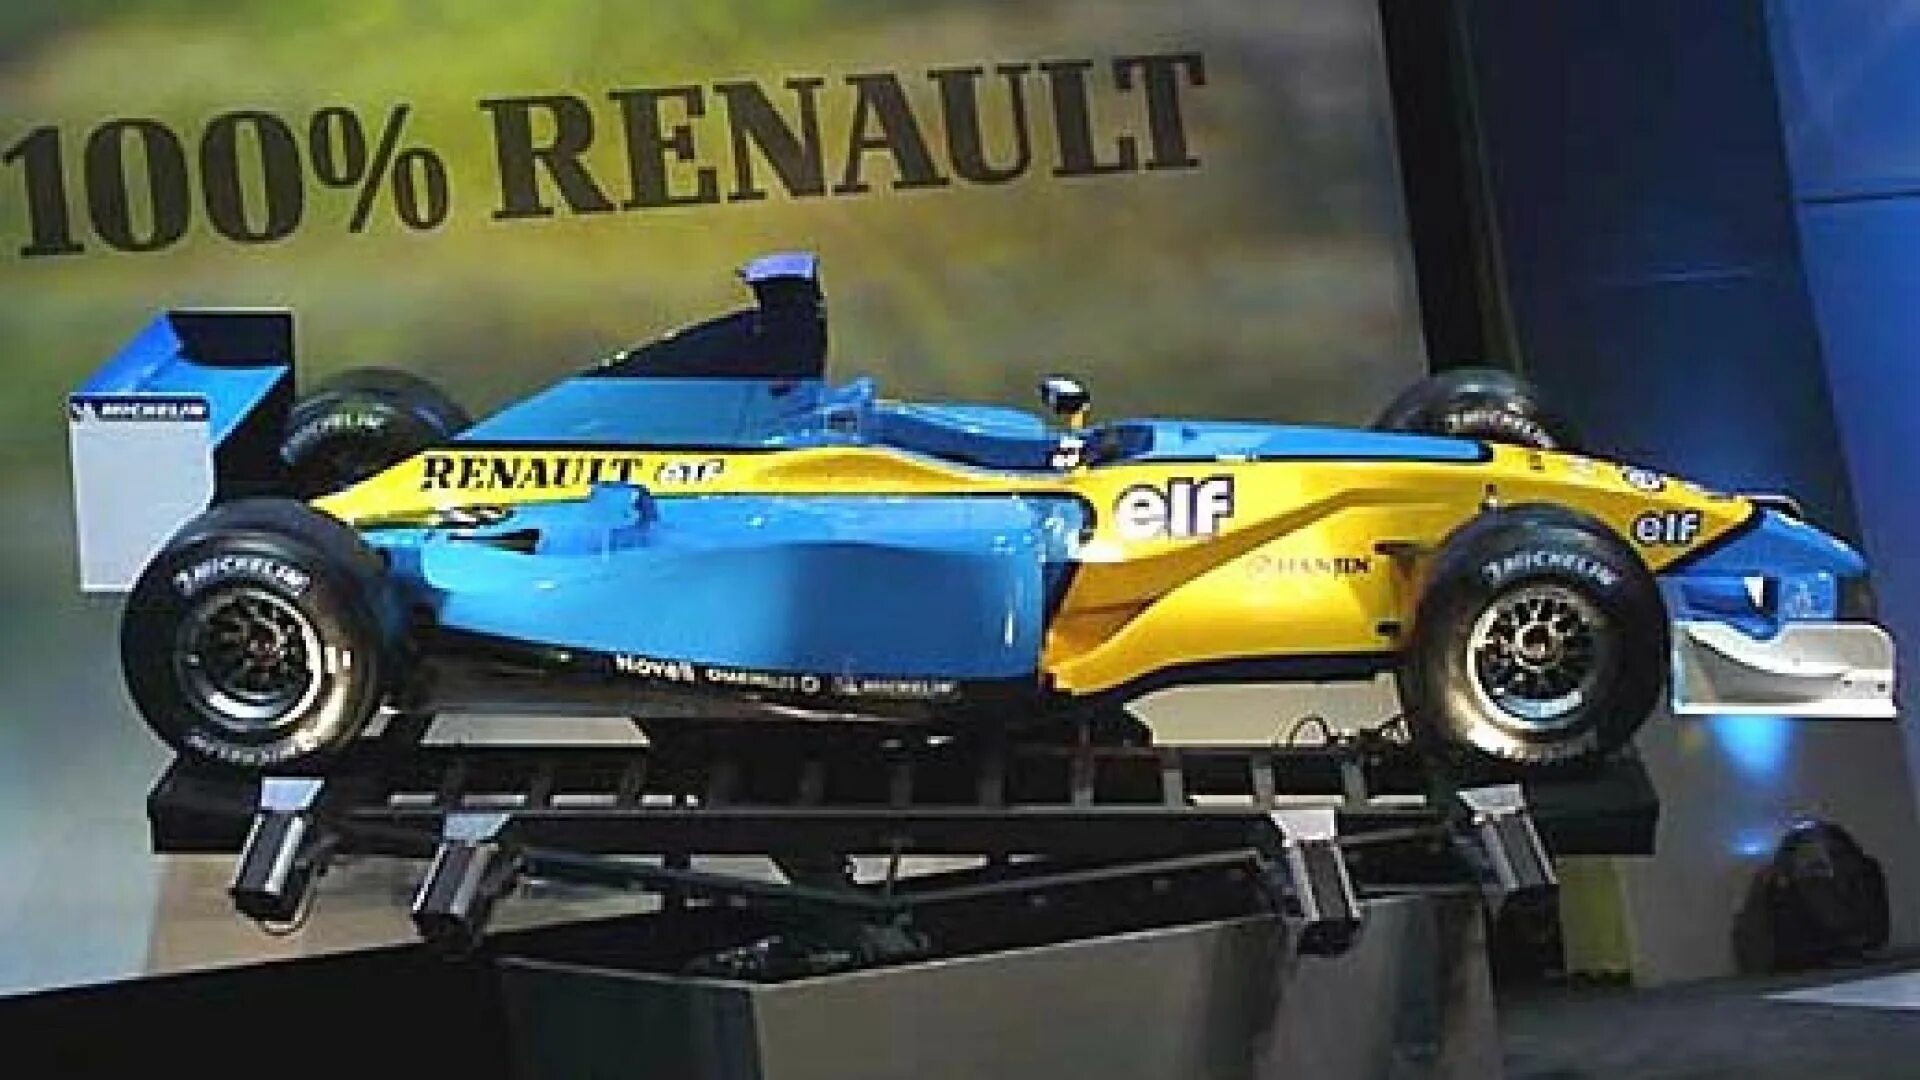 100 renault. Renault f1 2002. Renault f1 mild Seven. Renault f1 mild Seven горный. Renault f1 2020.